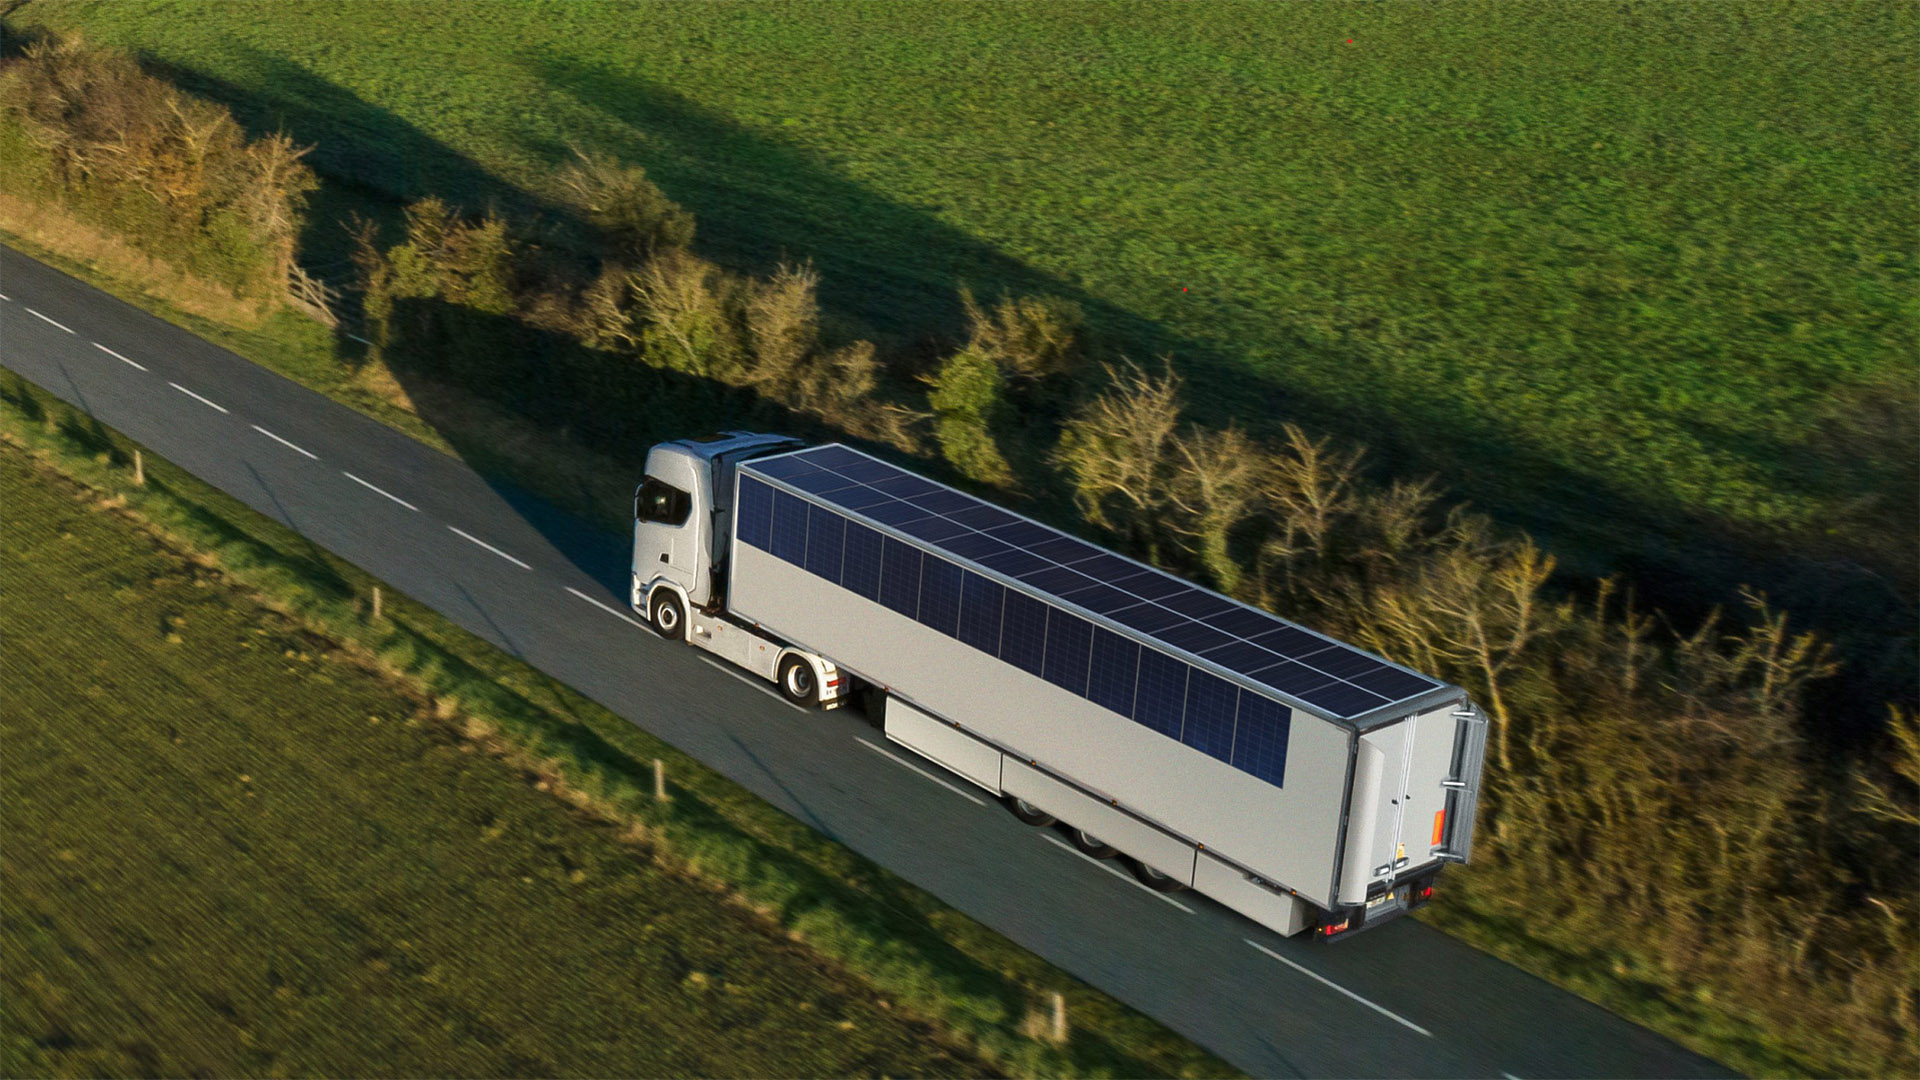 El trailer equipado con paneles solares instalados por Sono Motors para las primeras pruebas